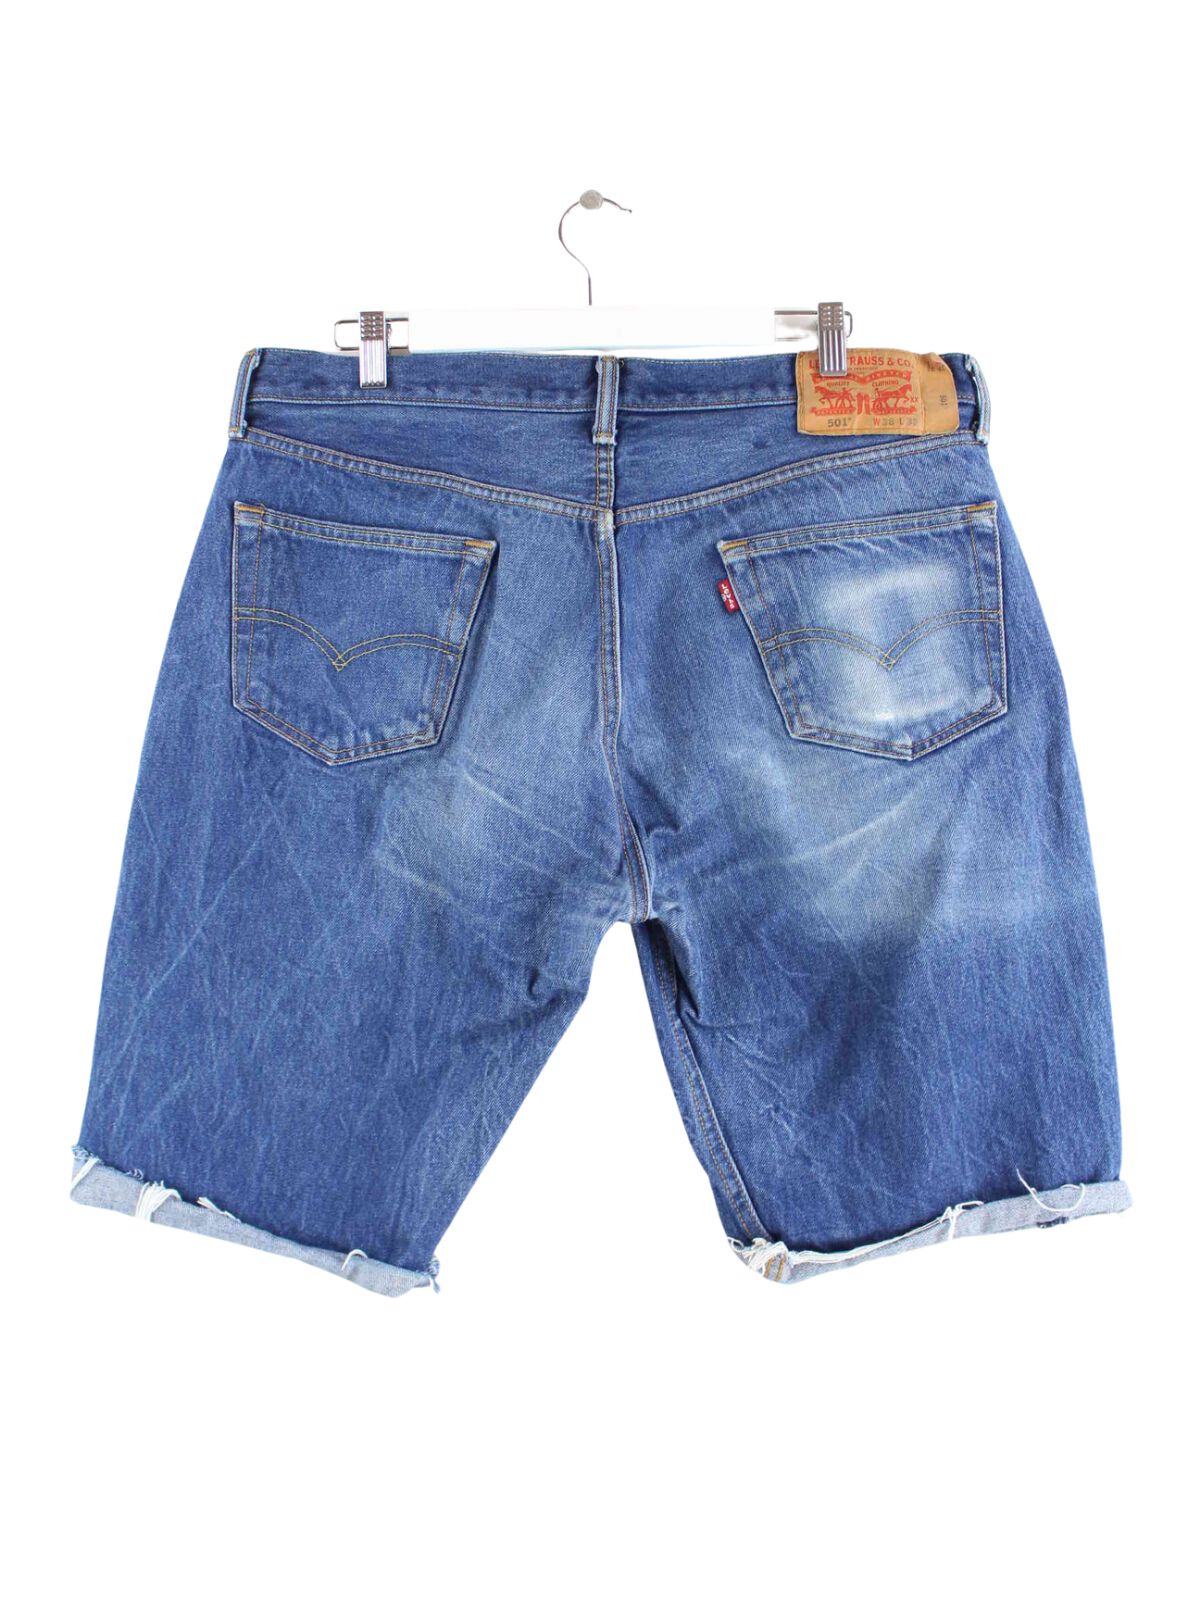 Levi's 501 Shorts Blau W38 (back image)